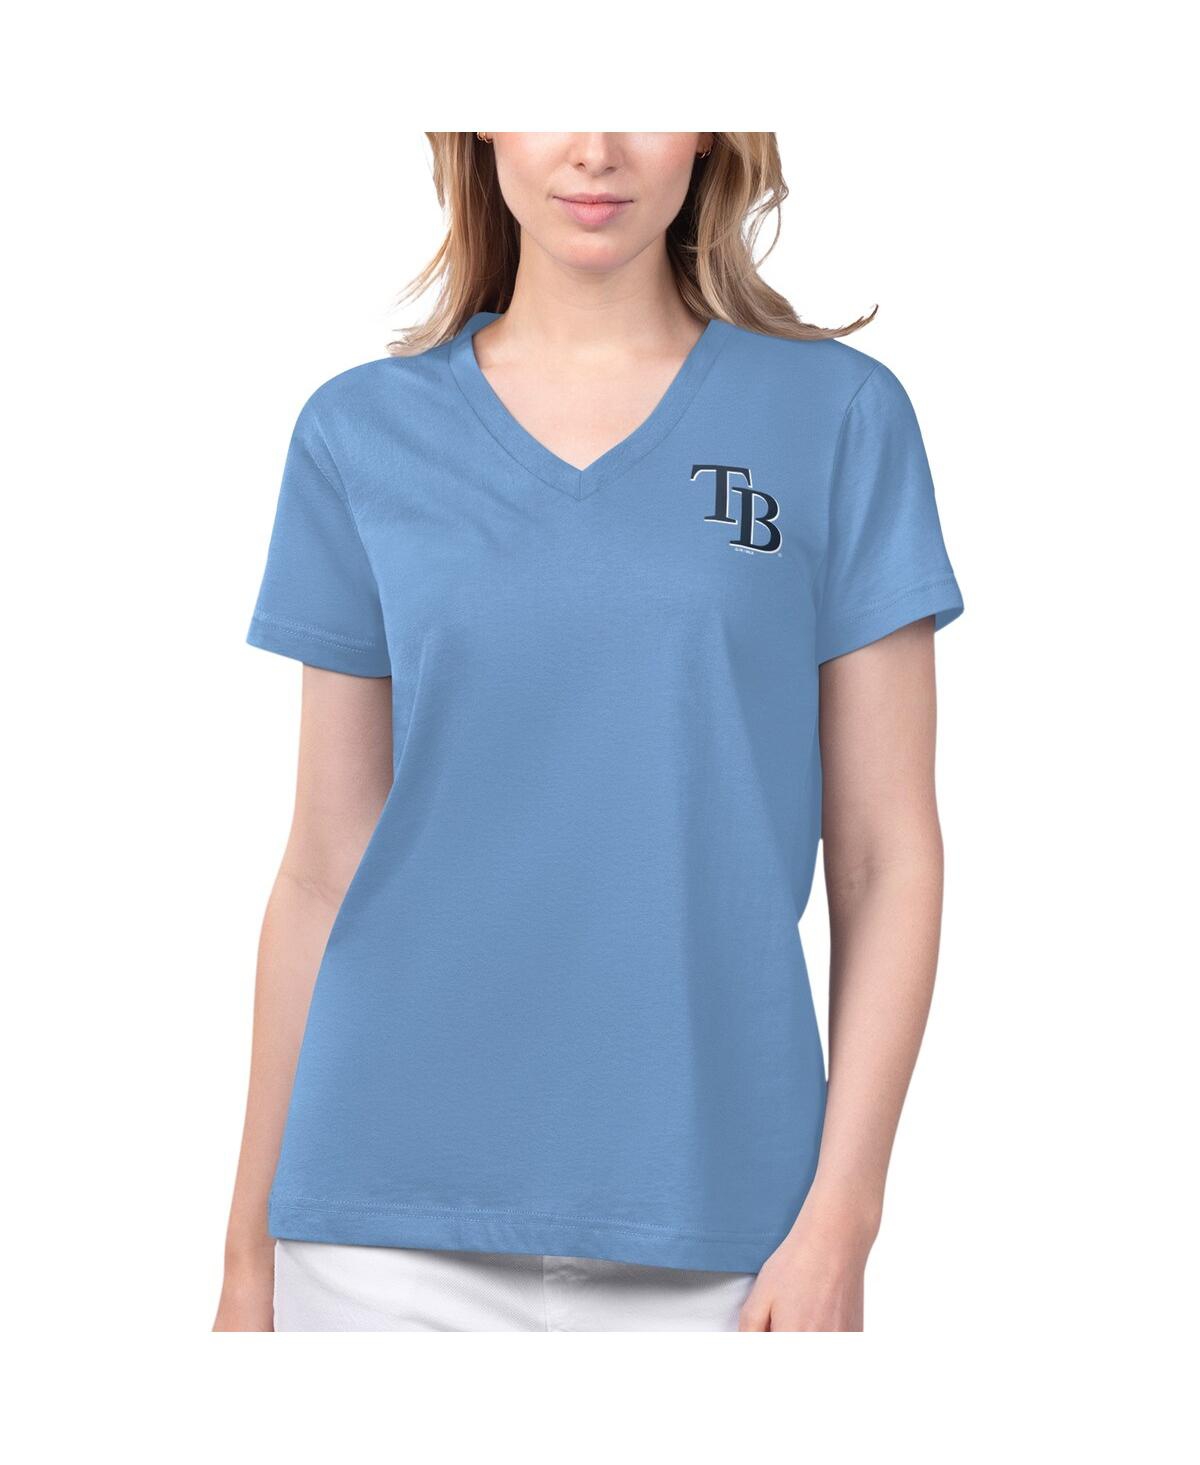 Margaritaville Women's  Light Blue Tampa Bay Rays Game Time V-neck T-shirt